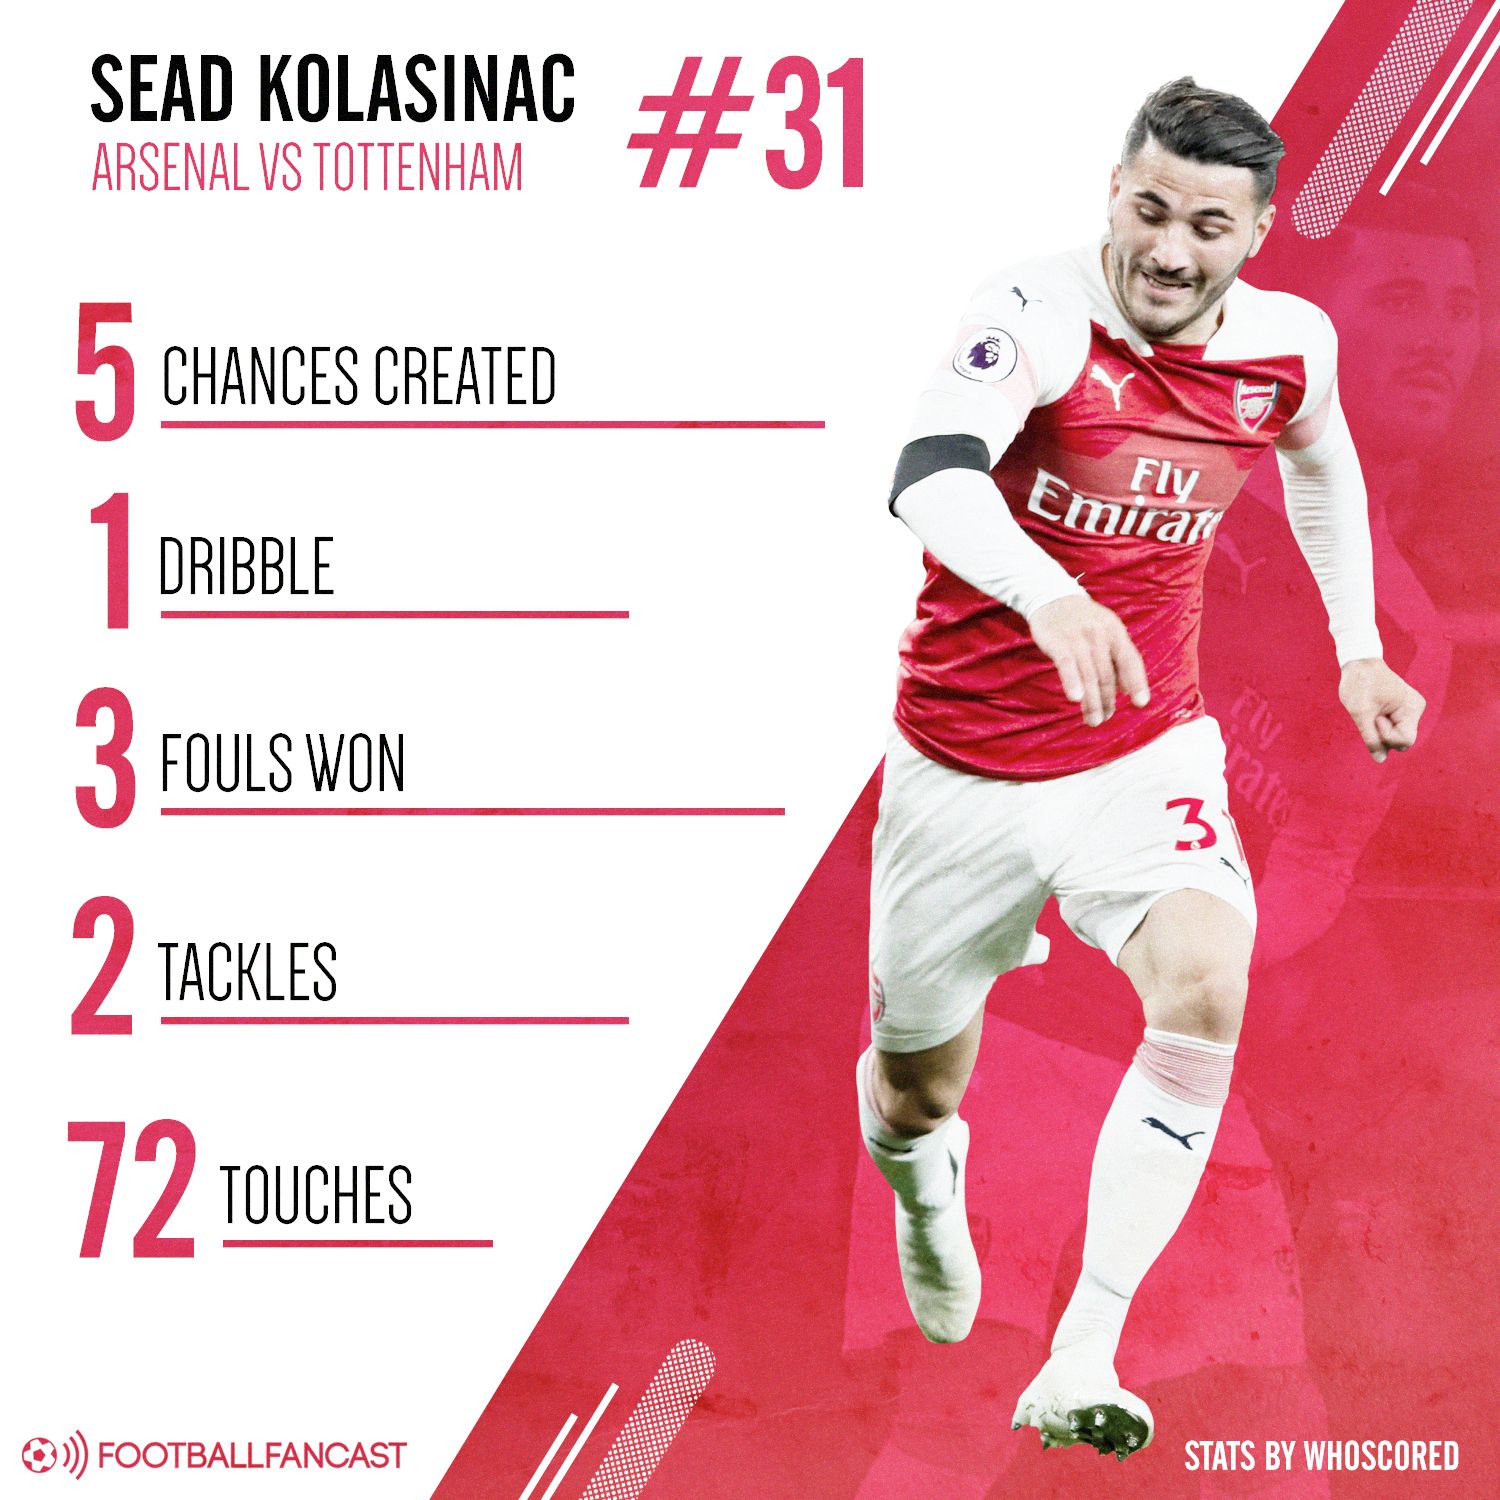 Sead Kolasinac's stats vs Tottenham